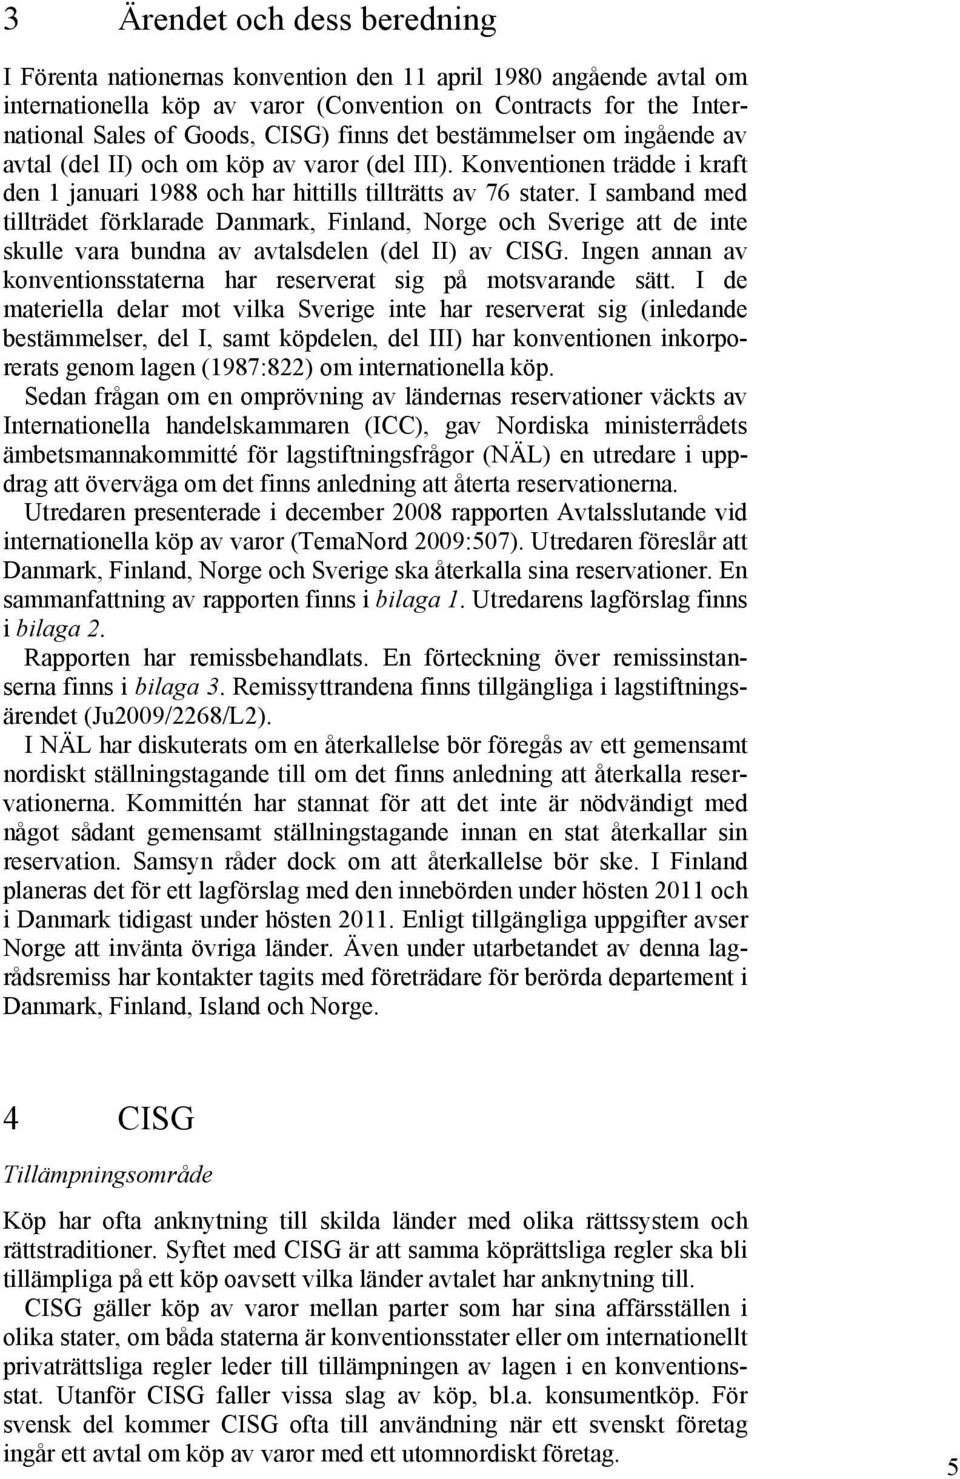 I samband med tillträdet förklarade Danmark, Finland, Norge och Sverige att de inte skulle vara bundna av avtalsdelen (del II) av CISG.